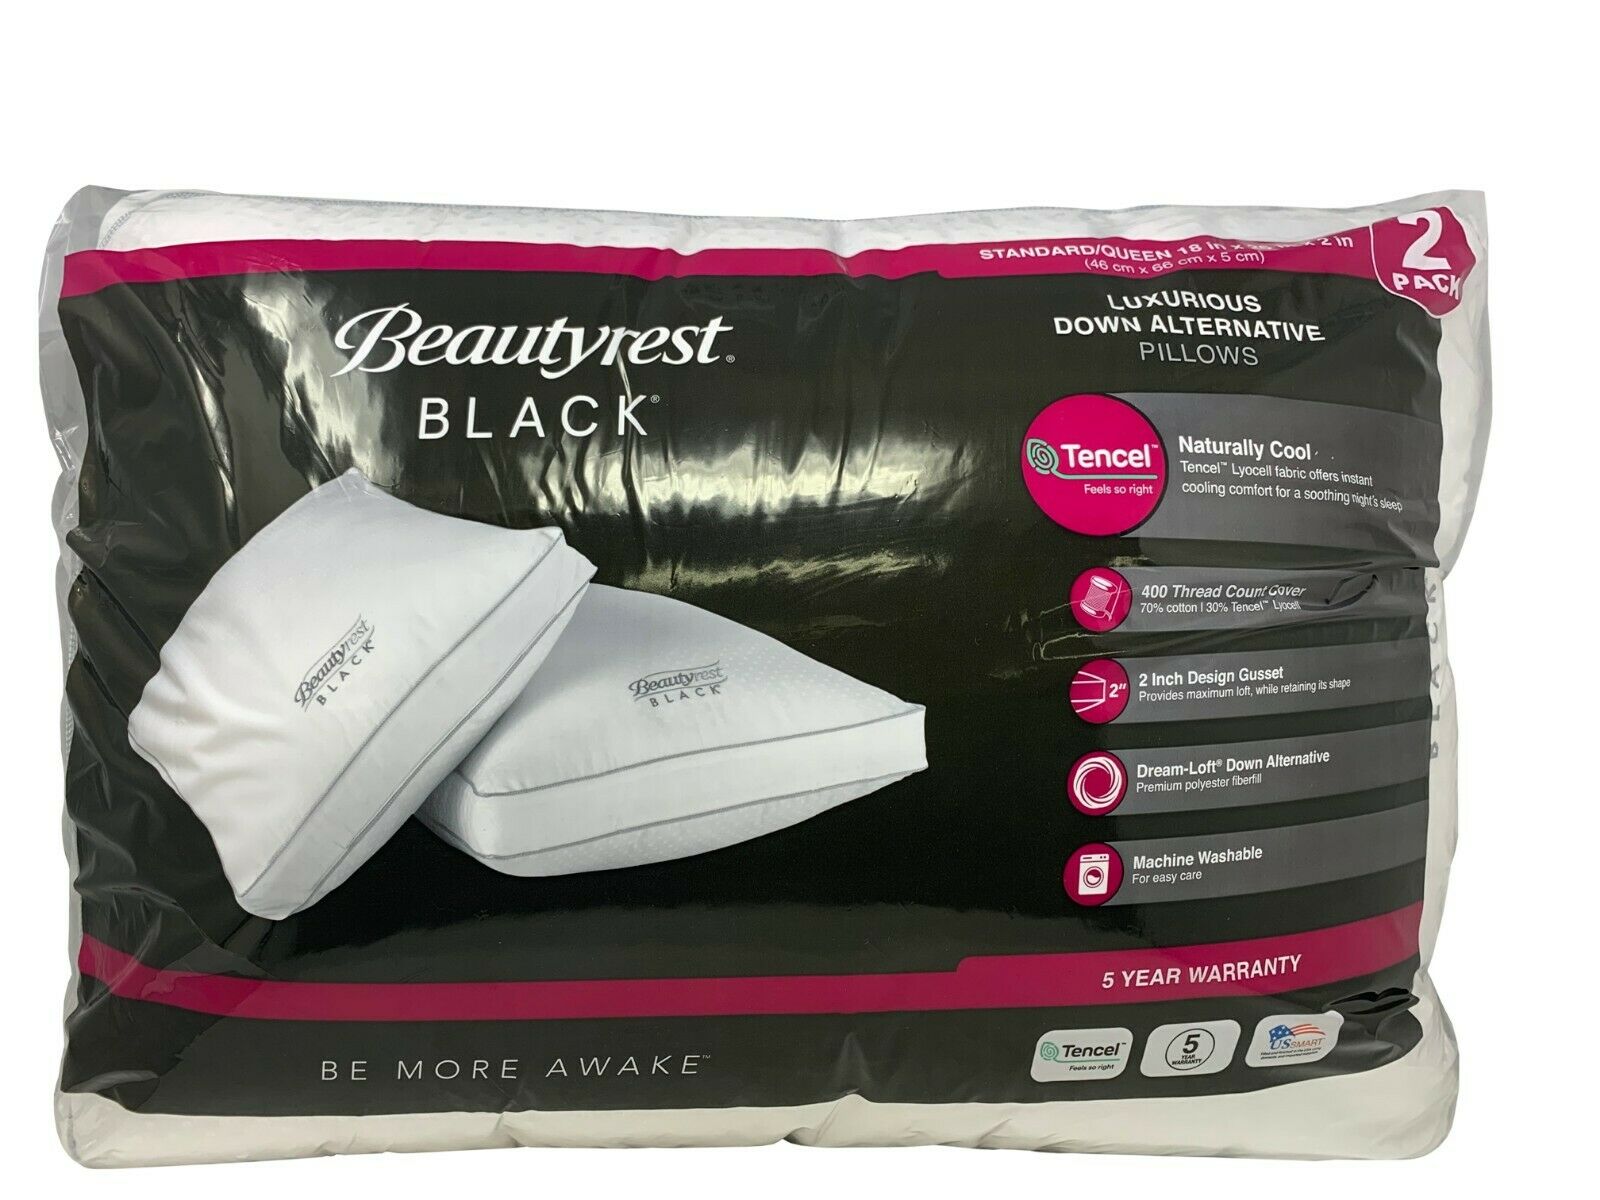 Beautyrest Black Luxurious Down Alternative Pillows 400 Thread Queen - 2 Pack